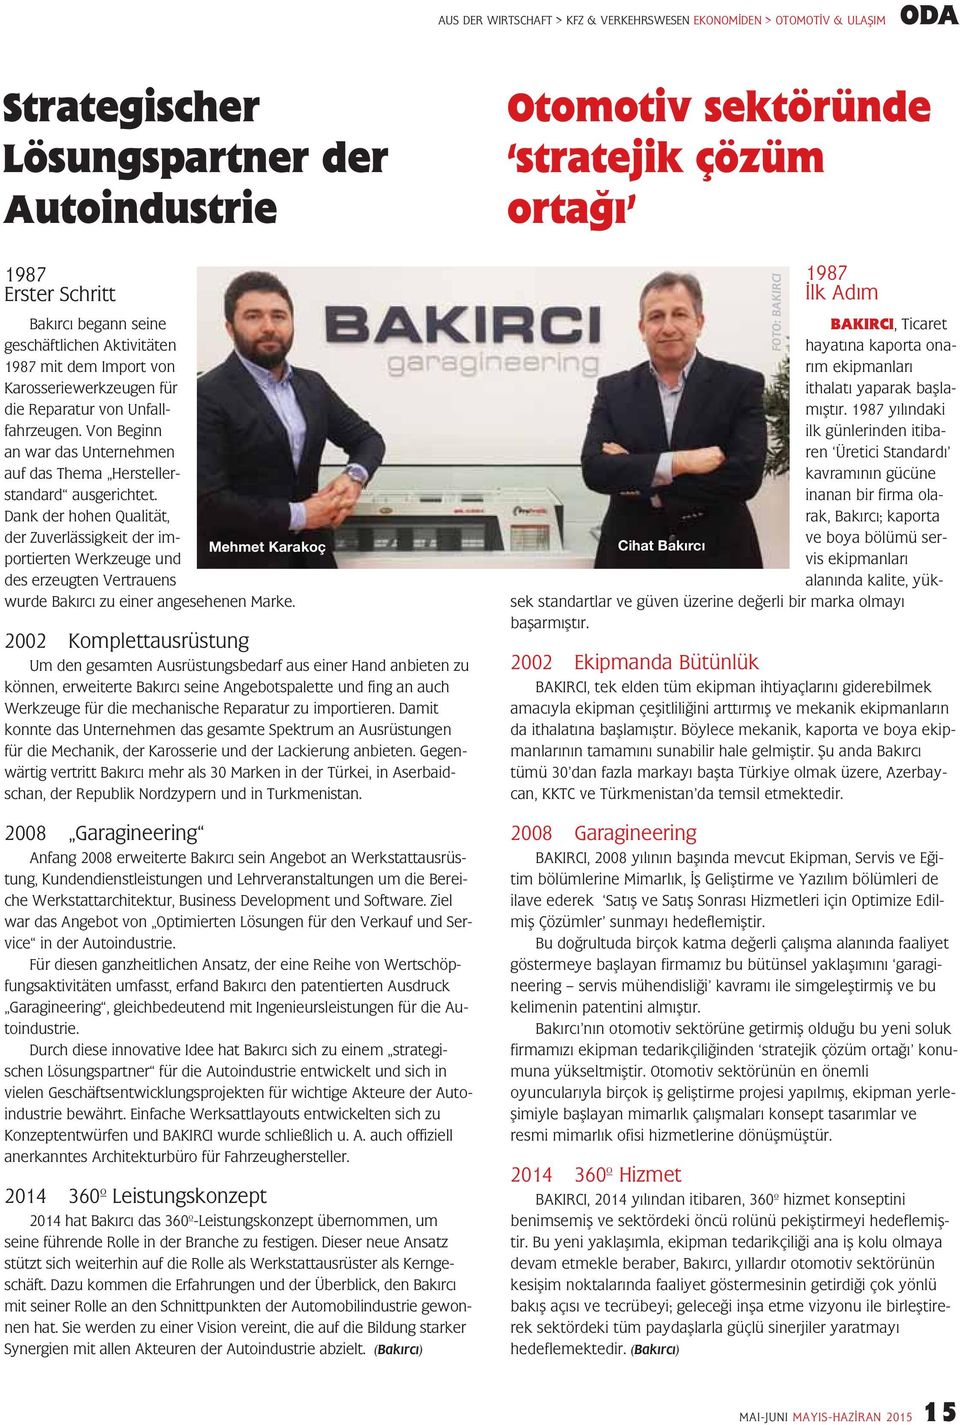 Dank der hohen Qualität, der Zuverlässigkeit der importierten Werkzeuge und Mehmet Karakoç des erzeugten Vertrauens wurde Bakırcı zu einer angesehenen Marke.